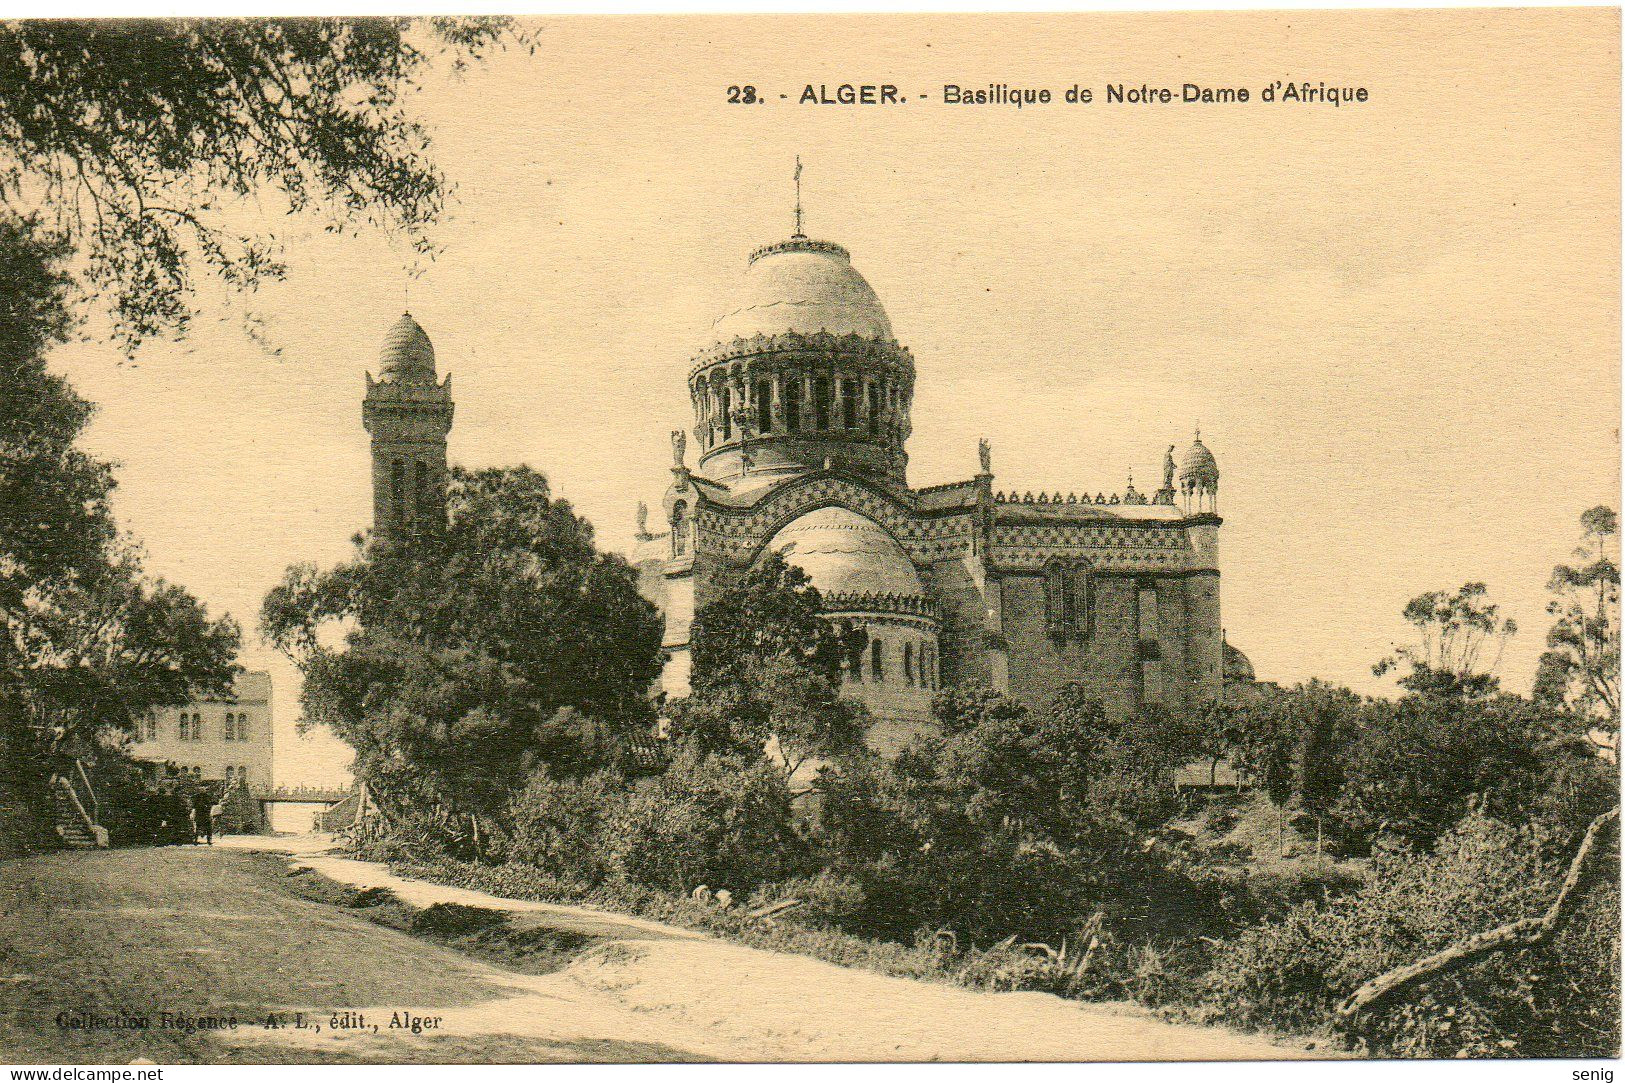 ALGERIE - ALGER - 23 - Basilique Notre Dame D'Afrique - Collection Régence A. L. édit. Alger (Leroux - Algeri